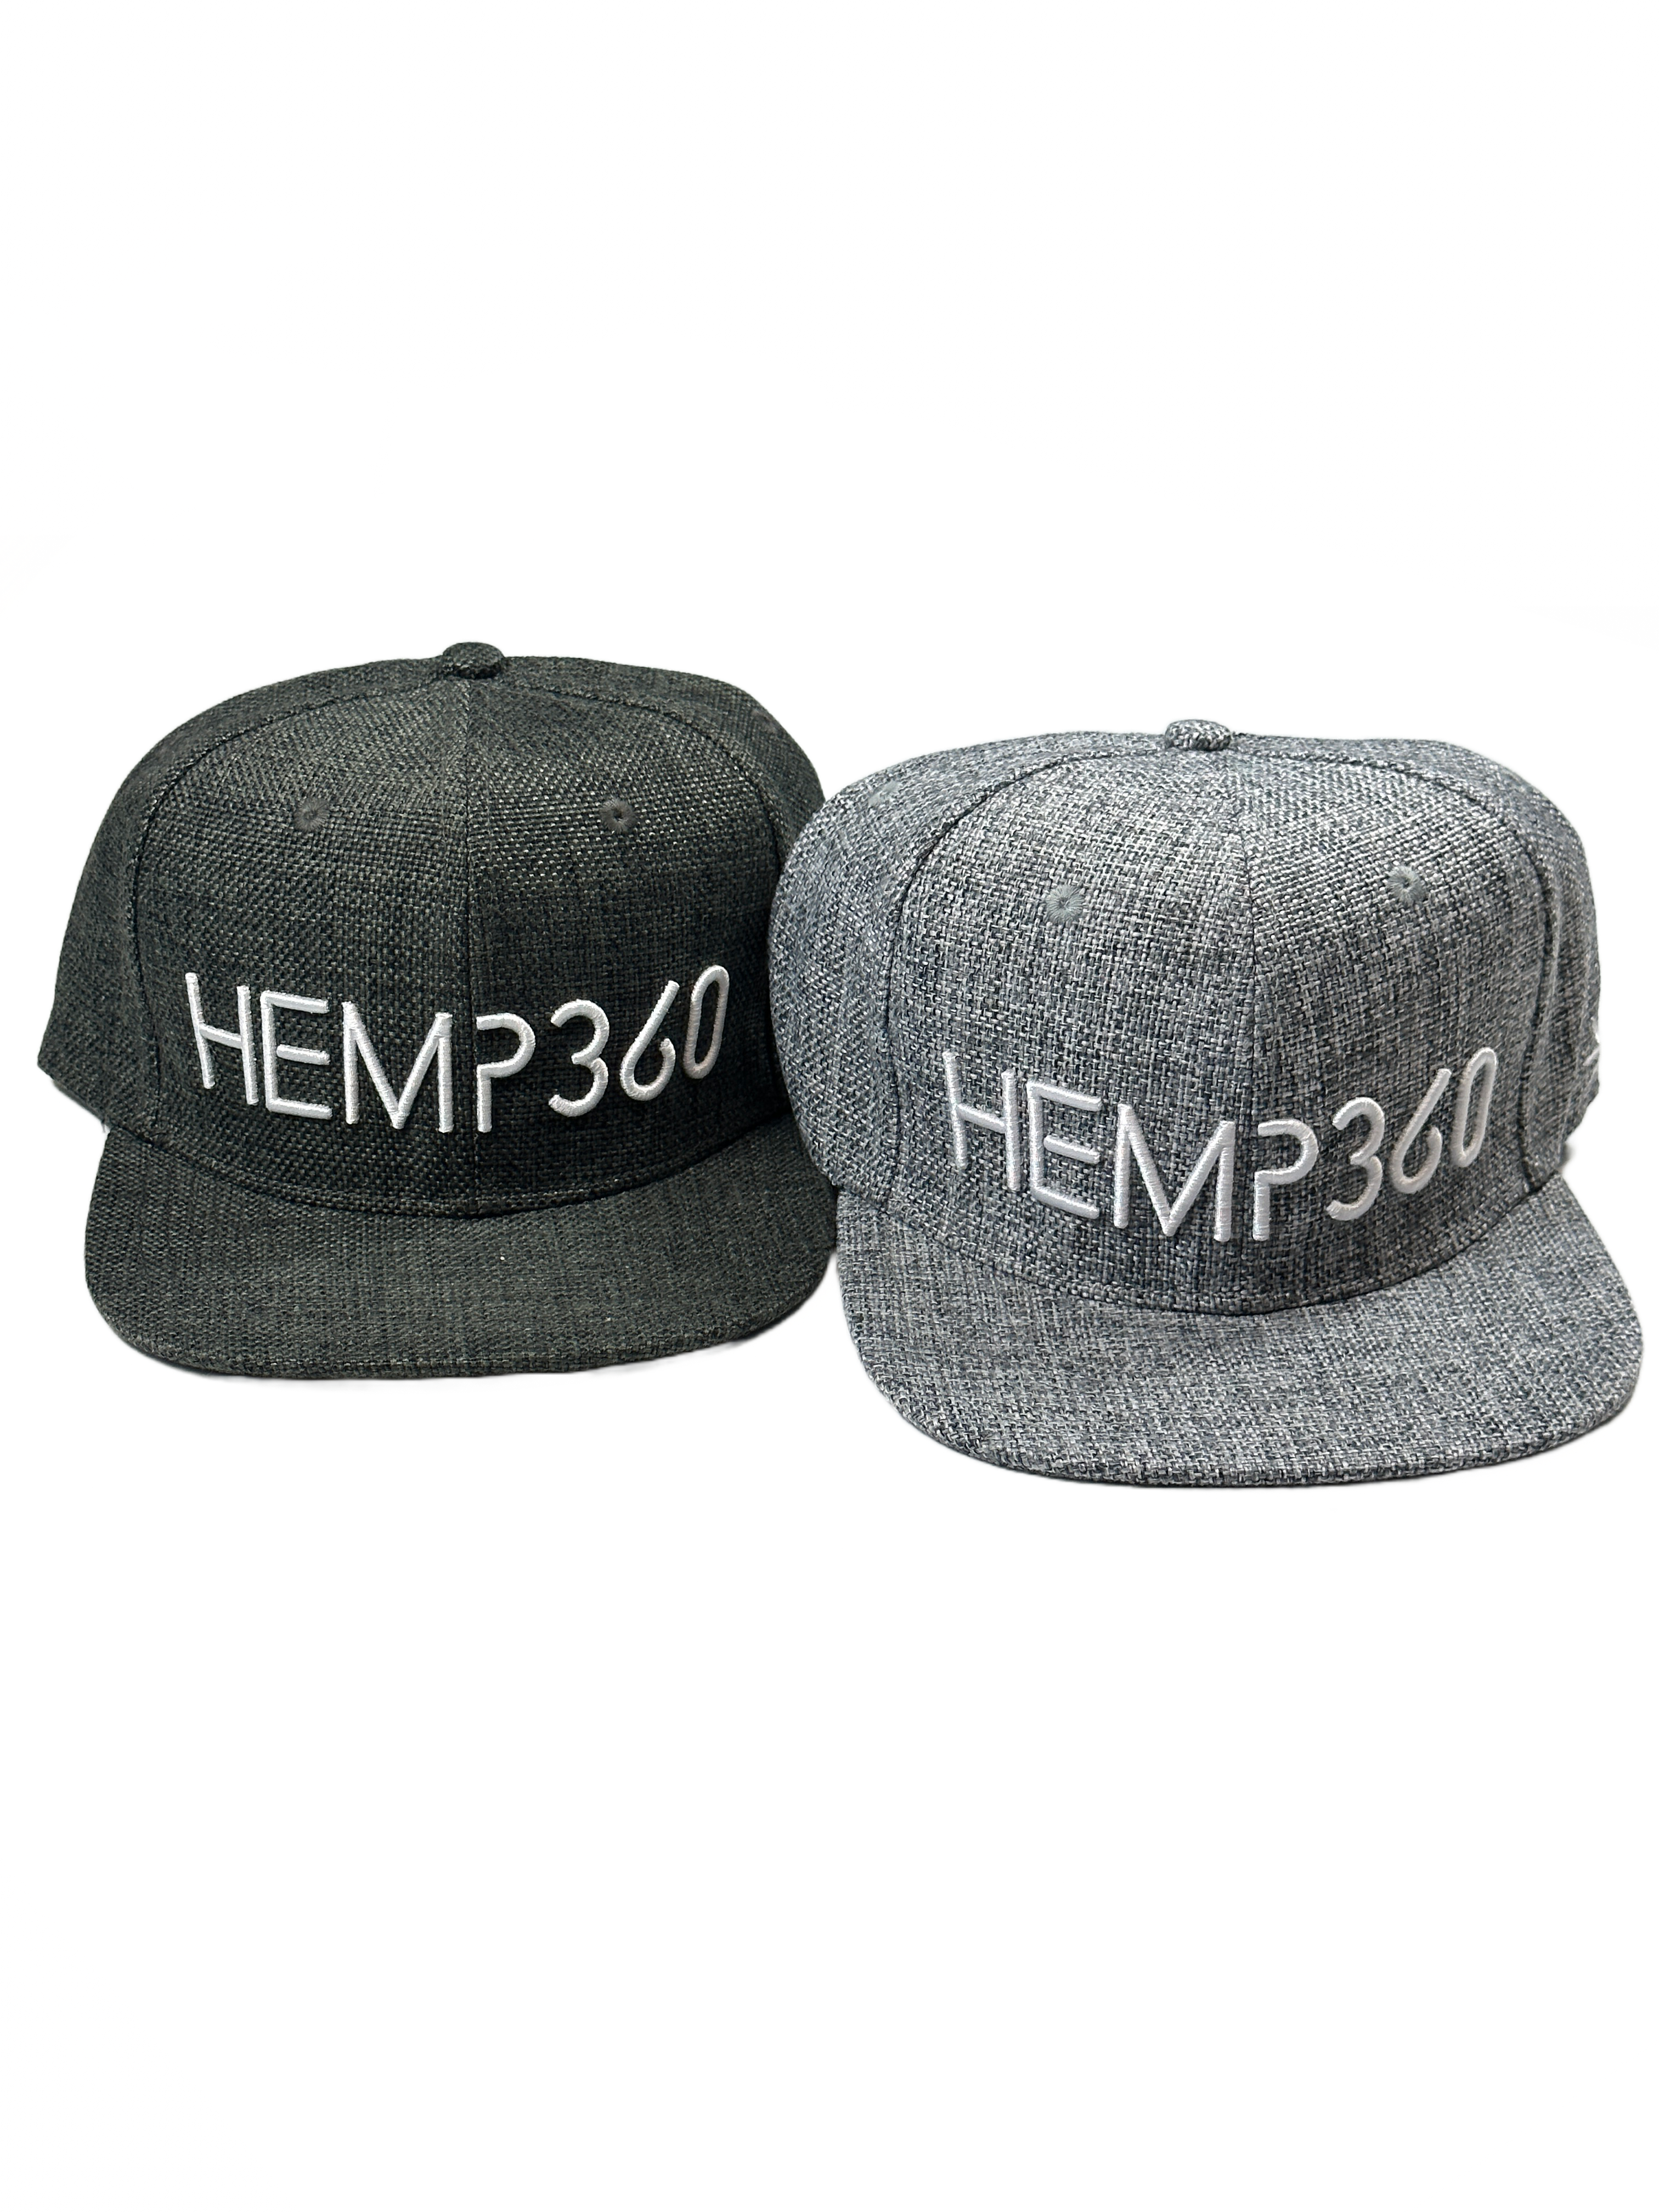 Hemp360 Hemp Fiber Hat Light Grey